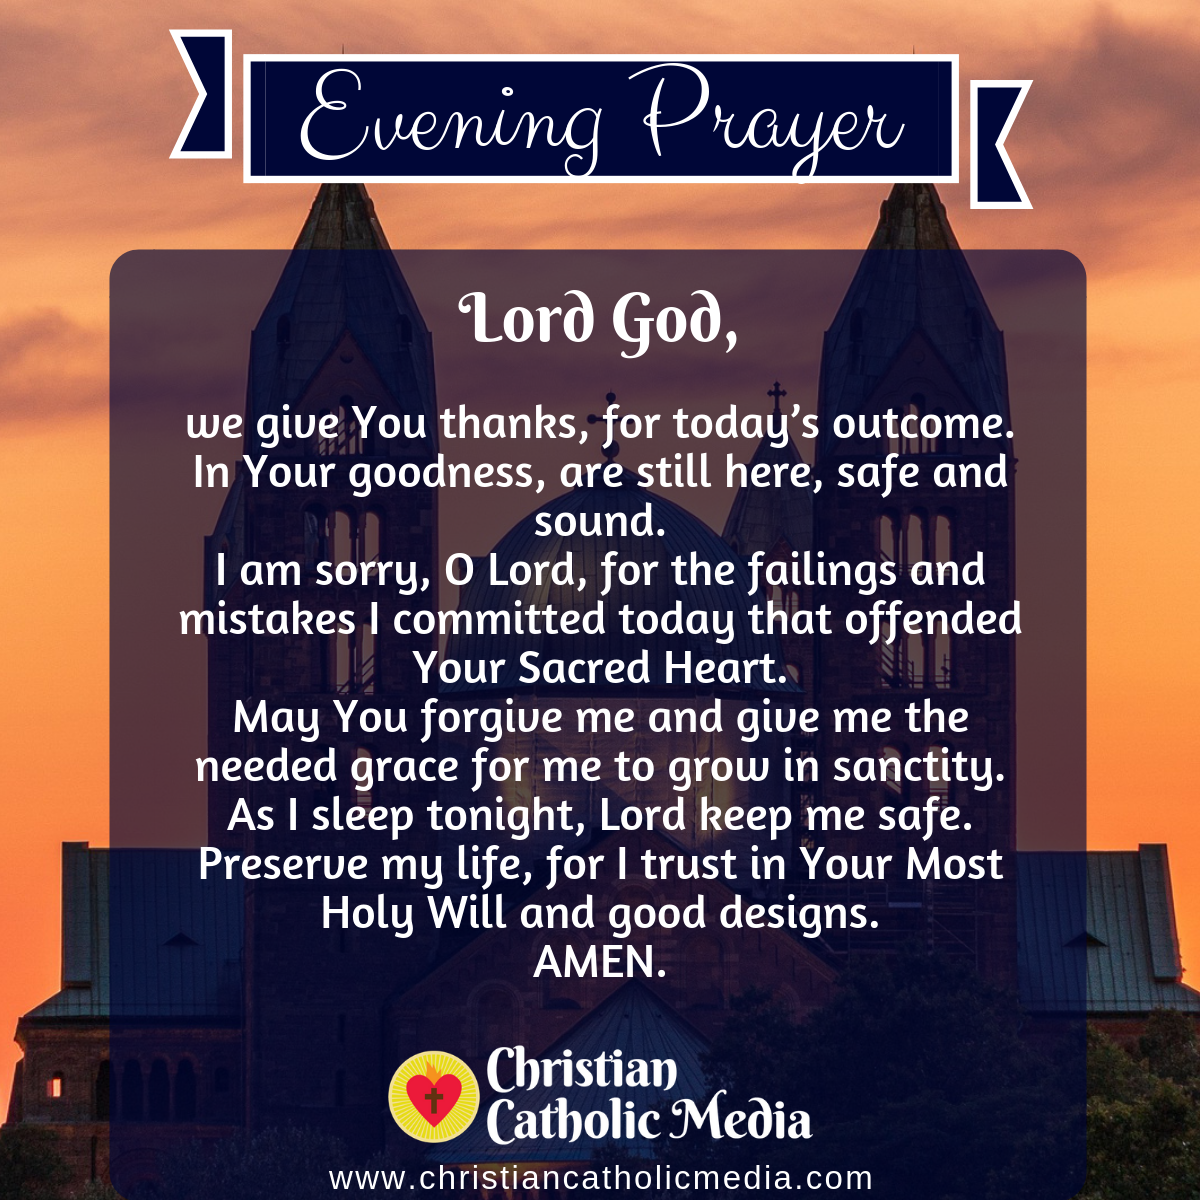 Evening Prayer Catholic Thursday 4232020 Christian Catholic Media